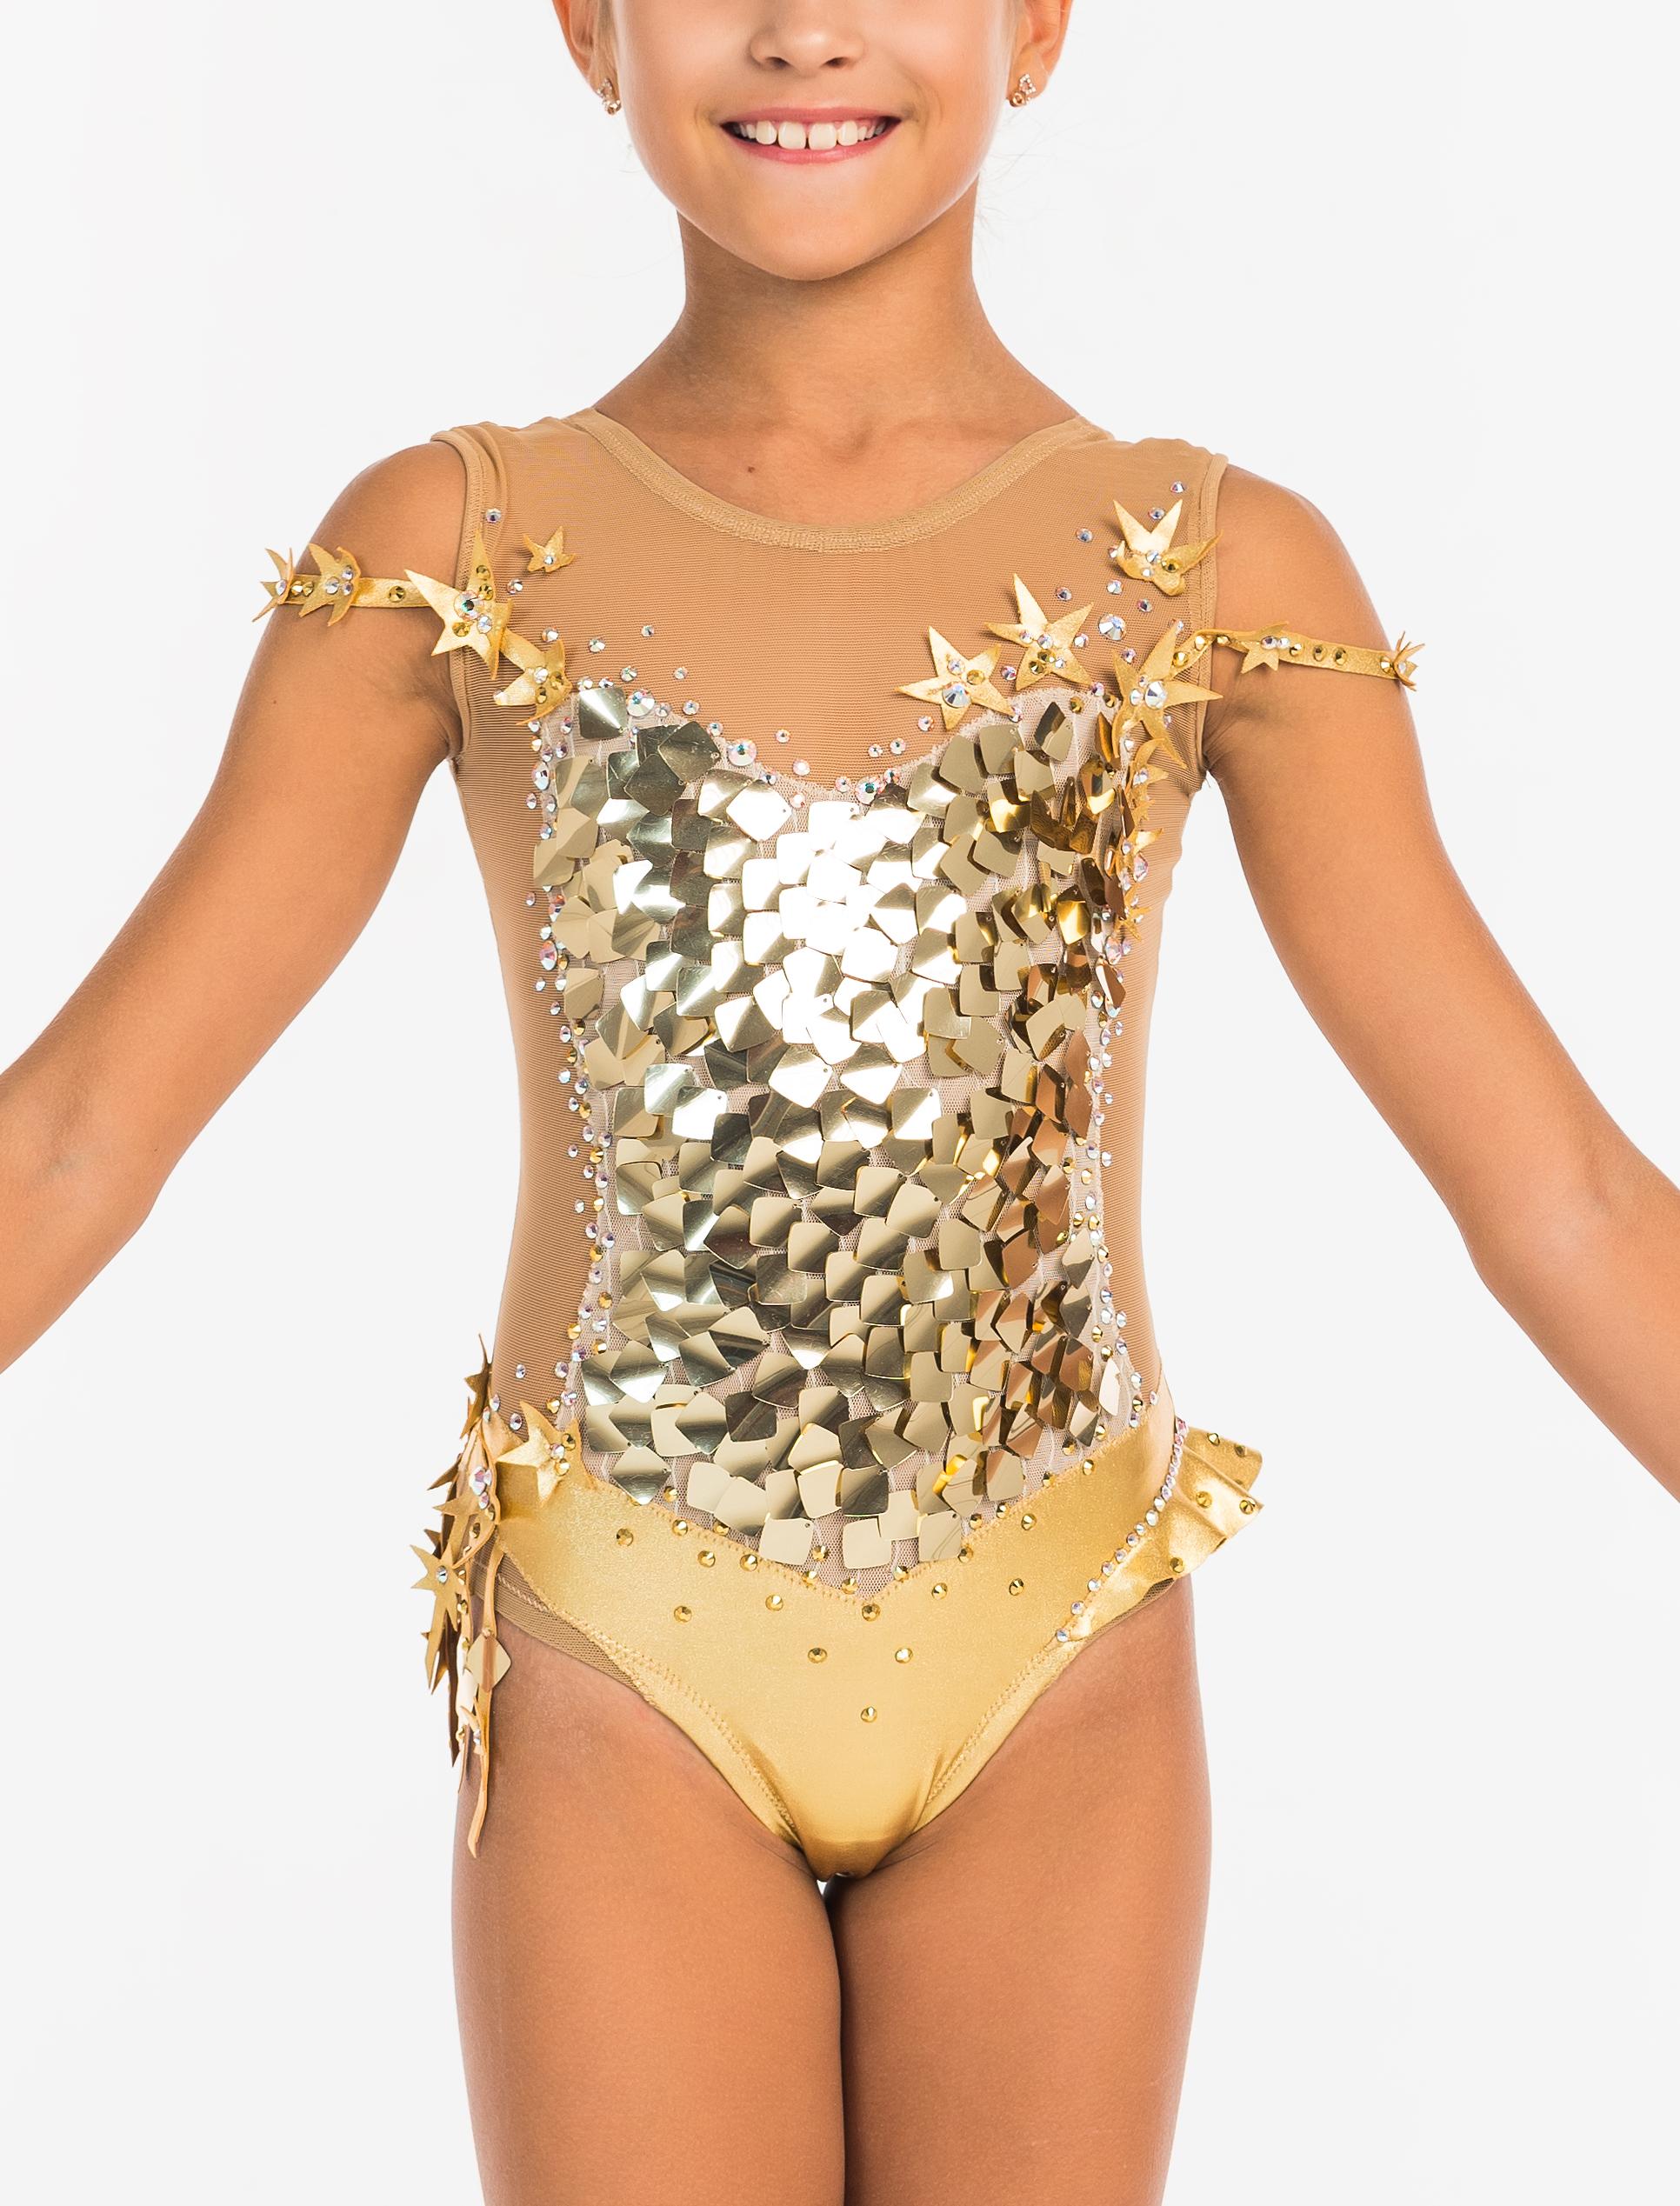 Купальник для художественной гимнастики Золотой вавилон — купить в интернет-магазине «Танцующие»